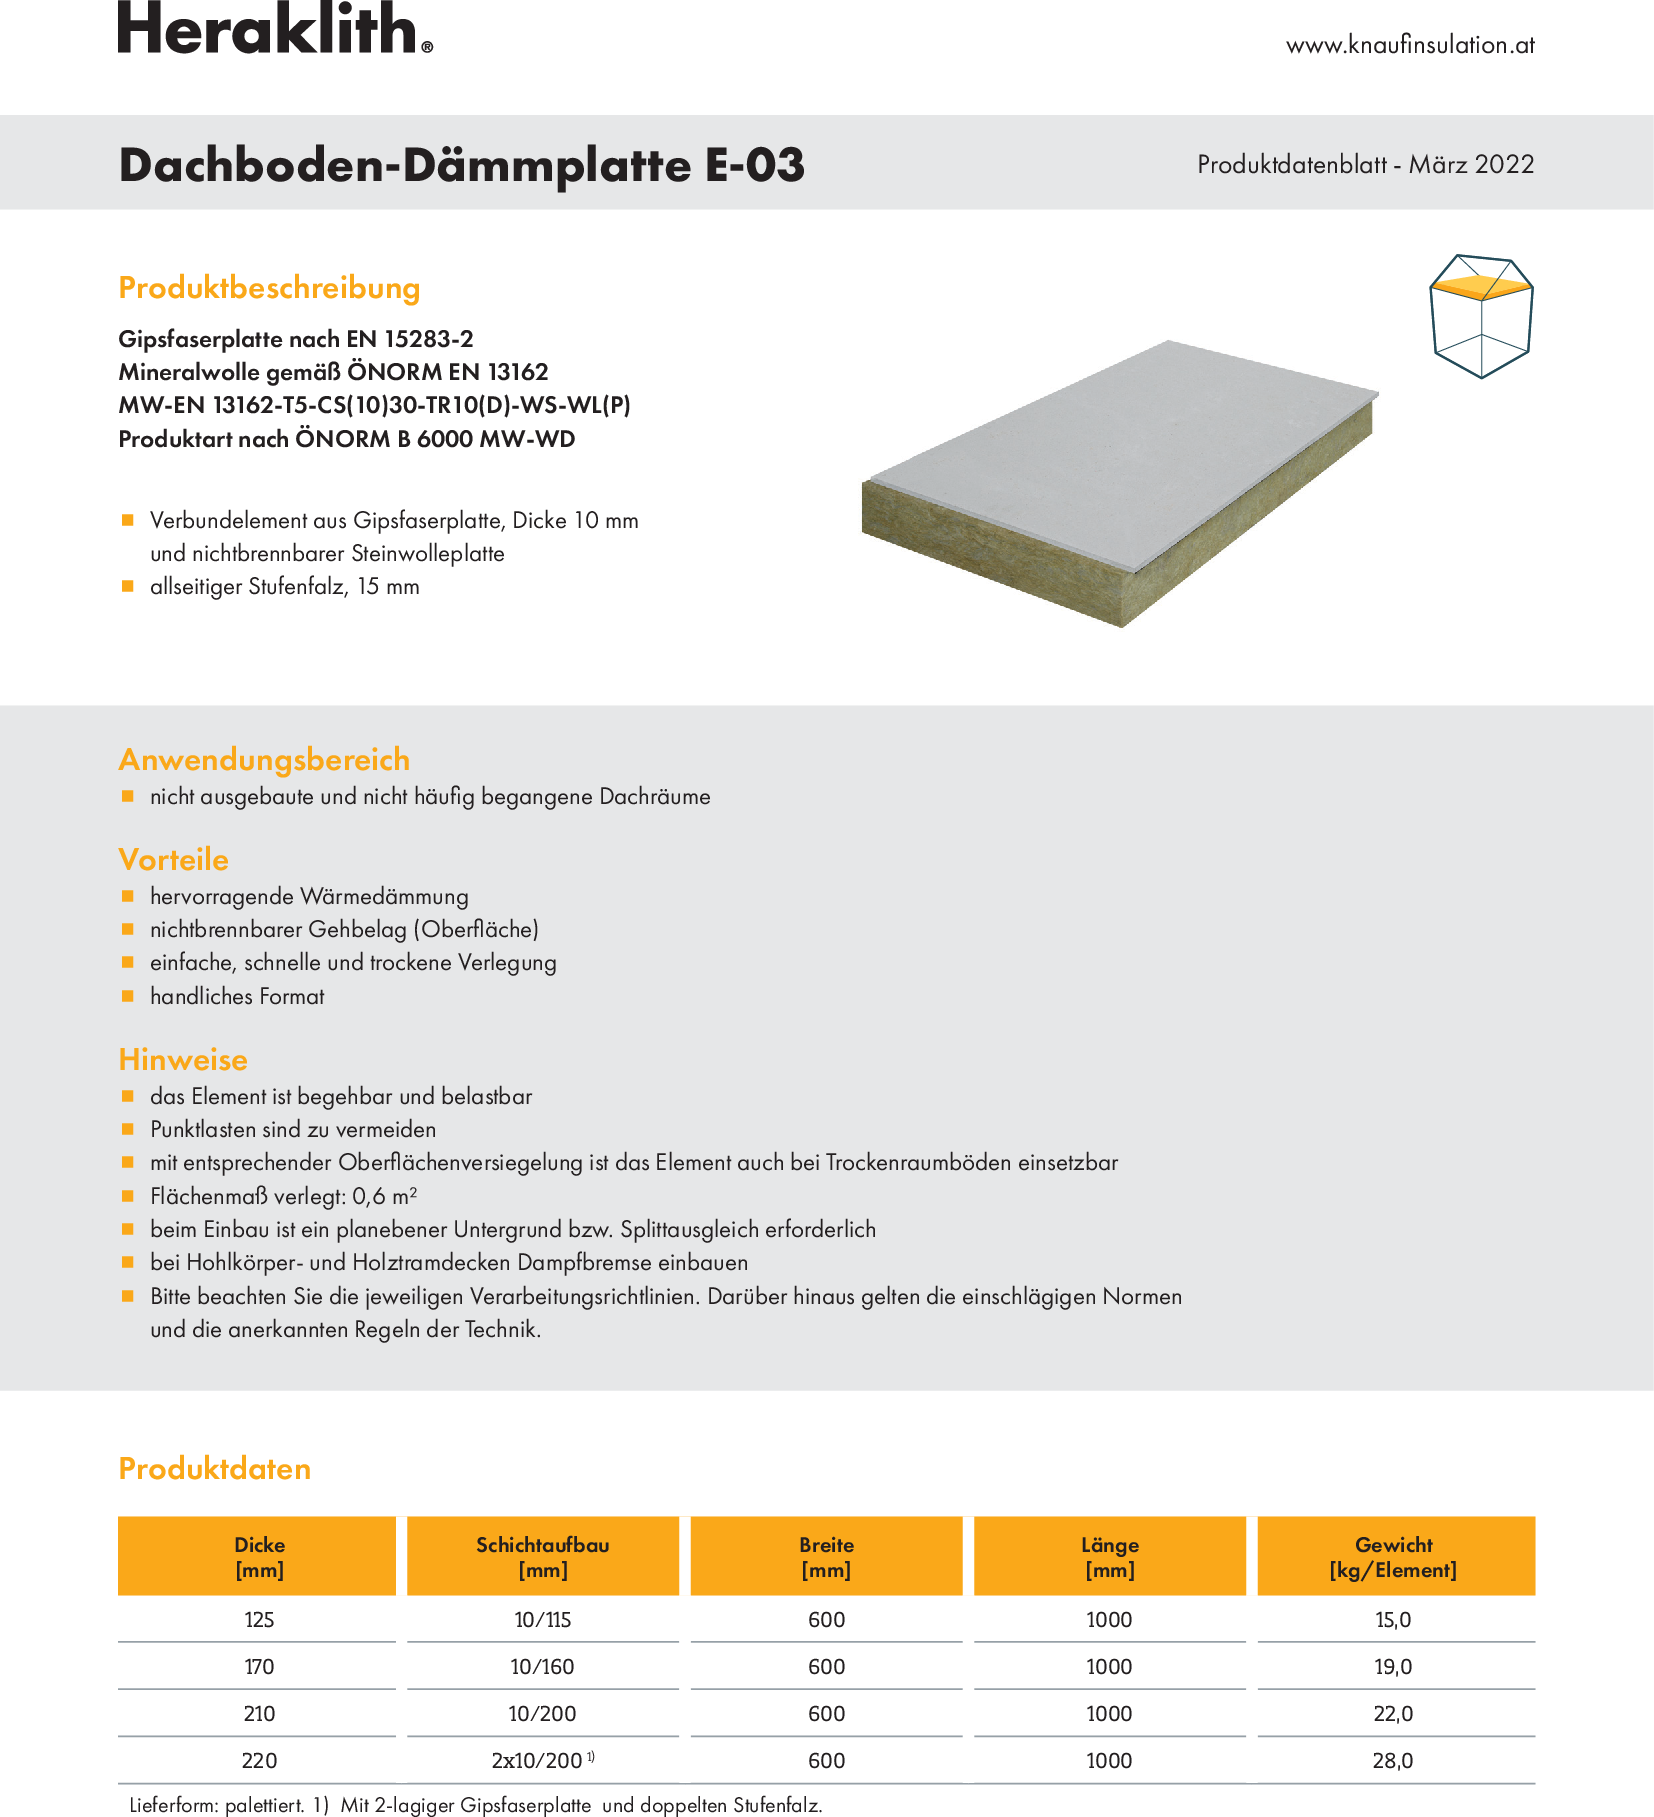 Dachboden-Dämmplatte E-03, Produktdatenblatt